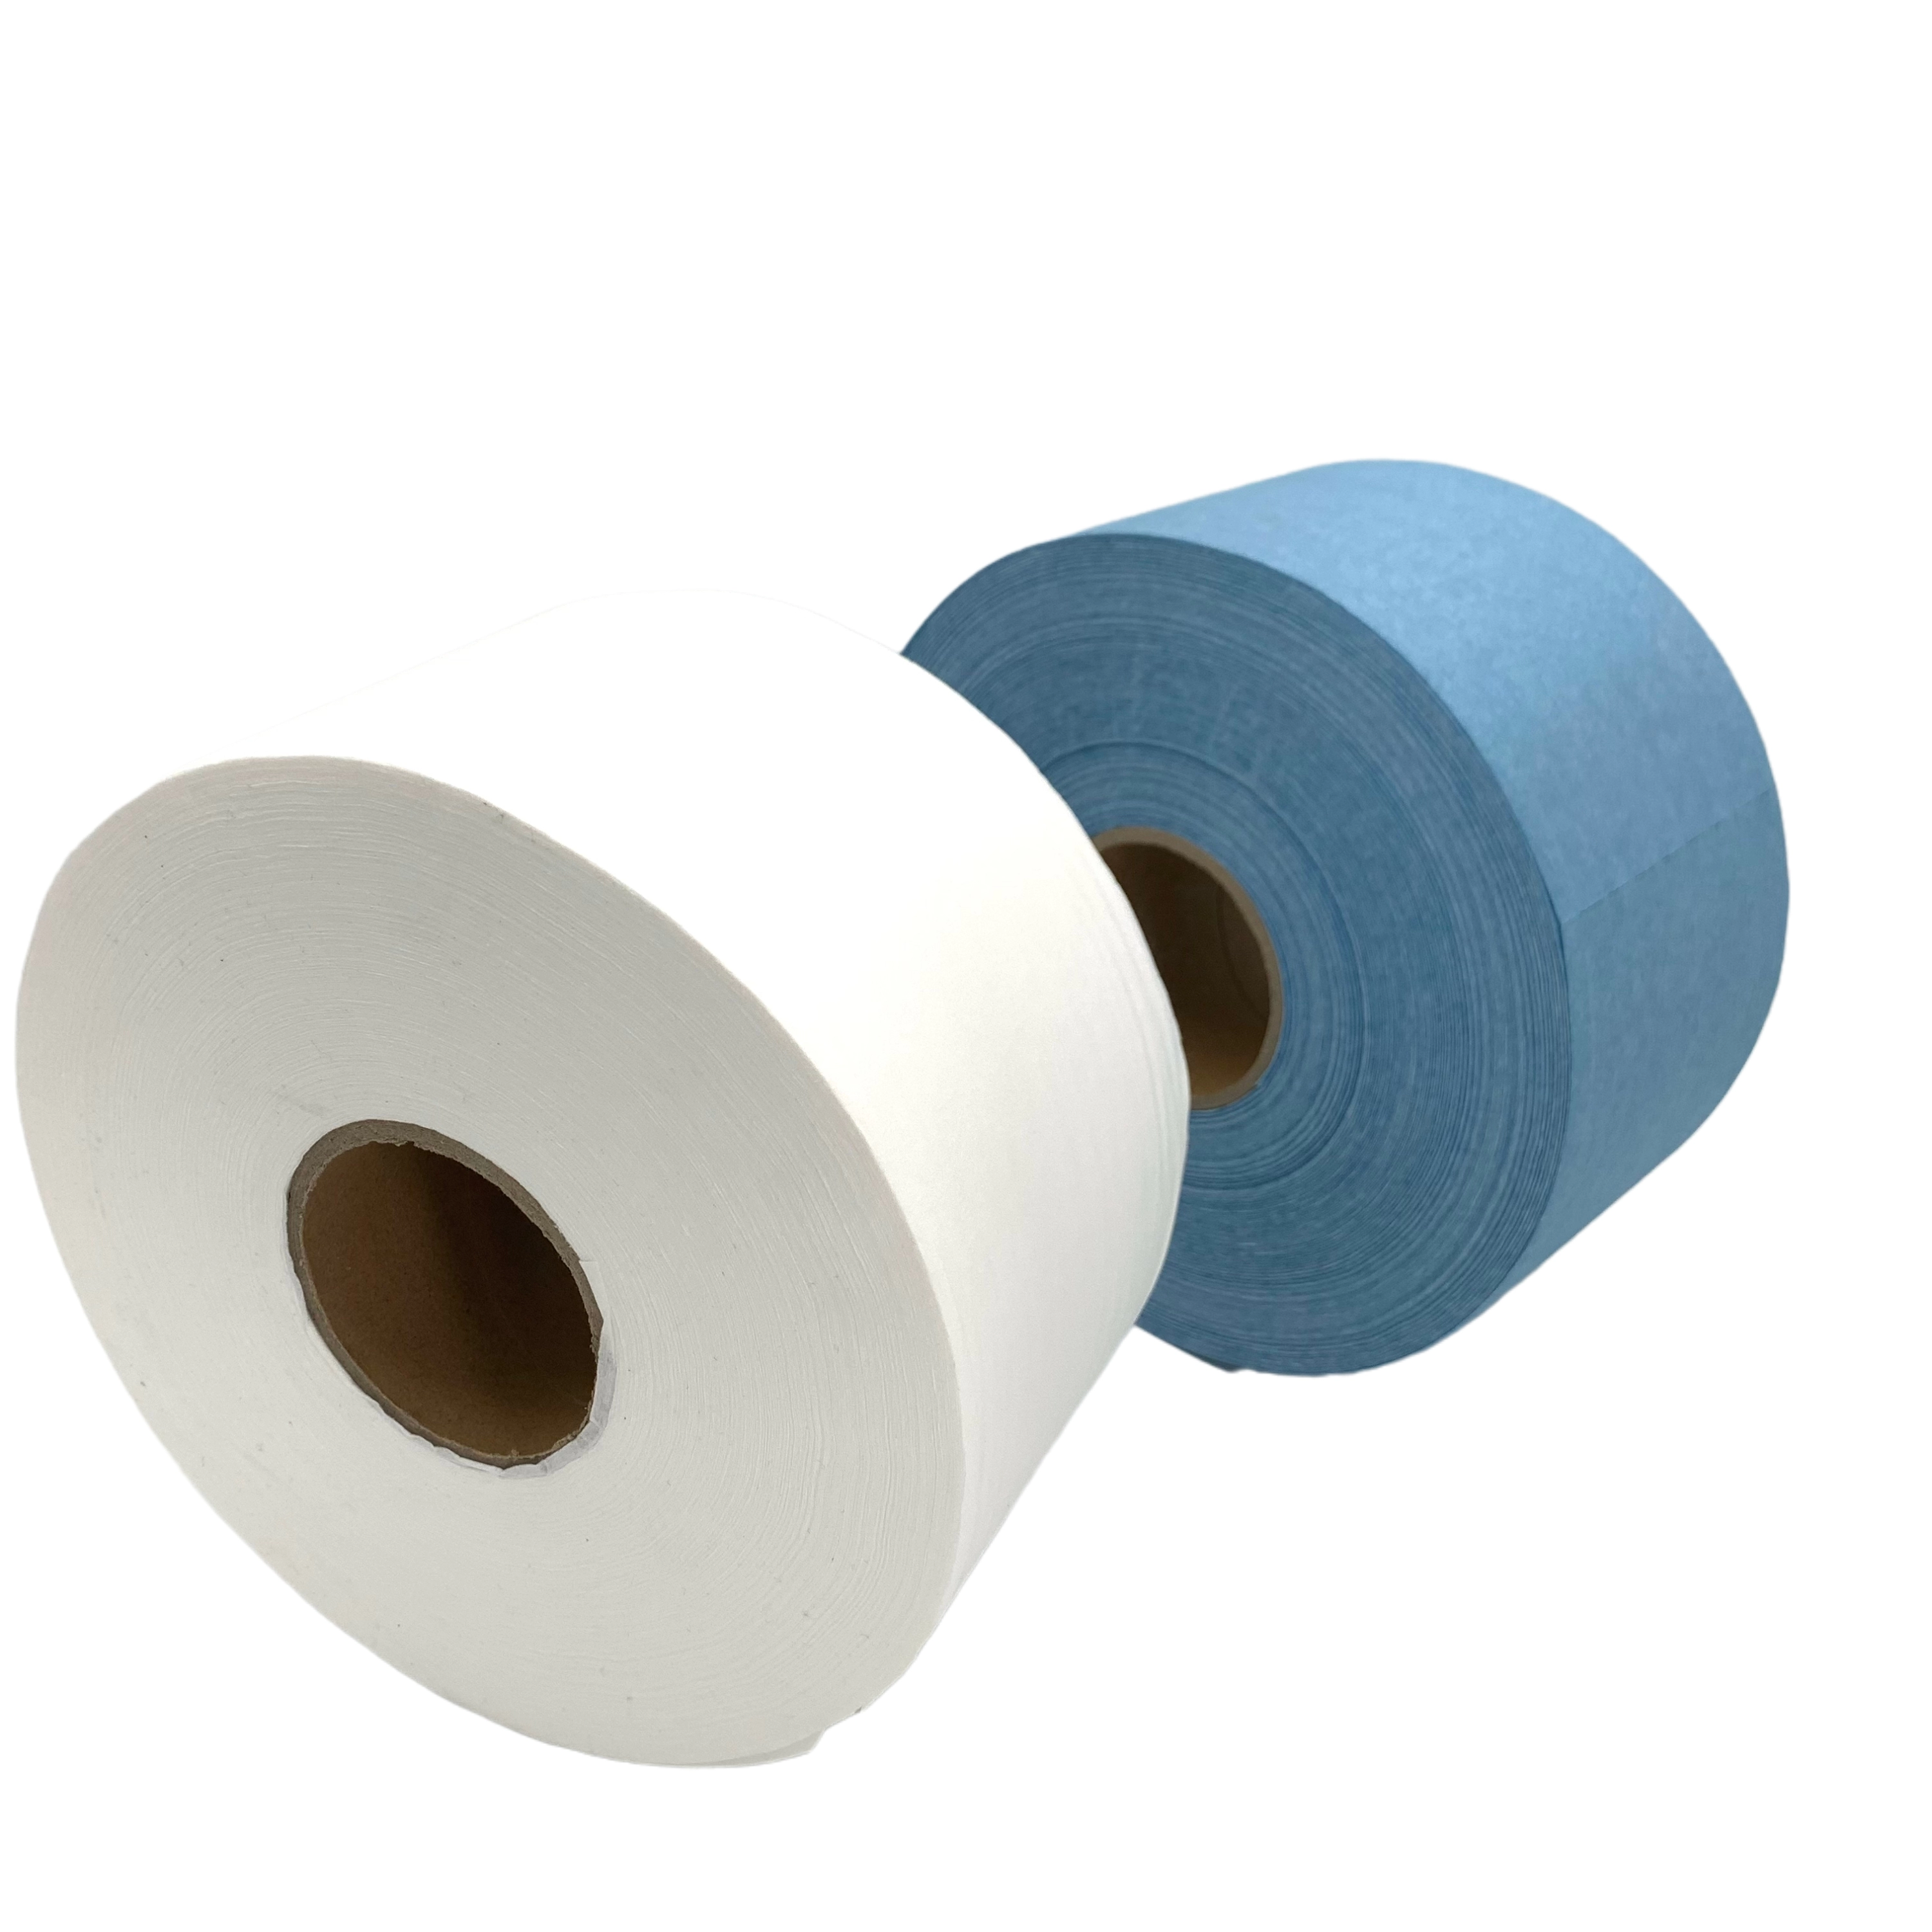 JD-6550 Big Roll Clean Room Rolka do wycieraczek Przemysłowa rolka do papieru Producent Sprzedaż bezpośrednia na wiele sposobów użytkowania